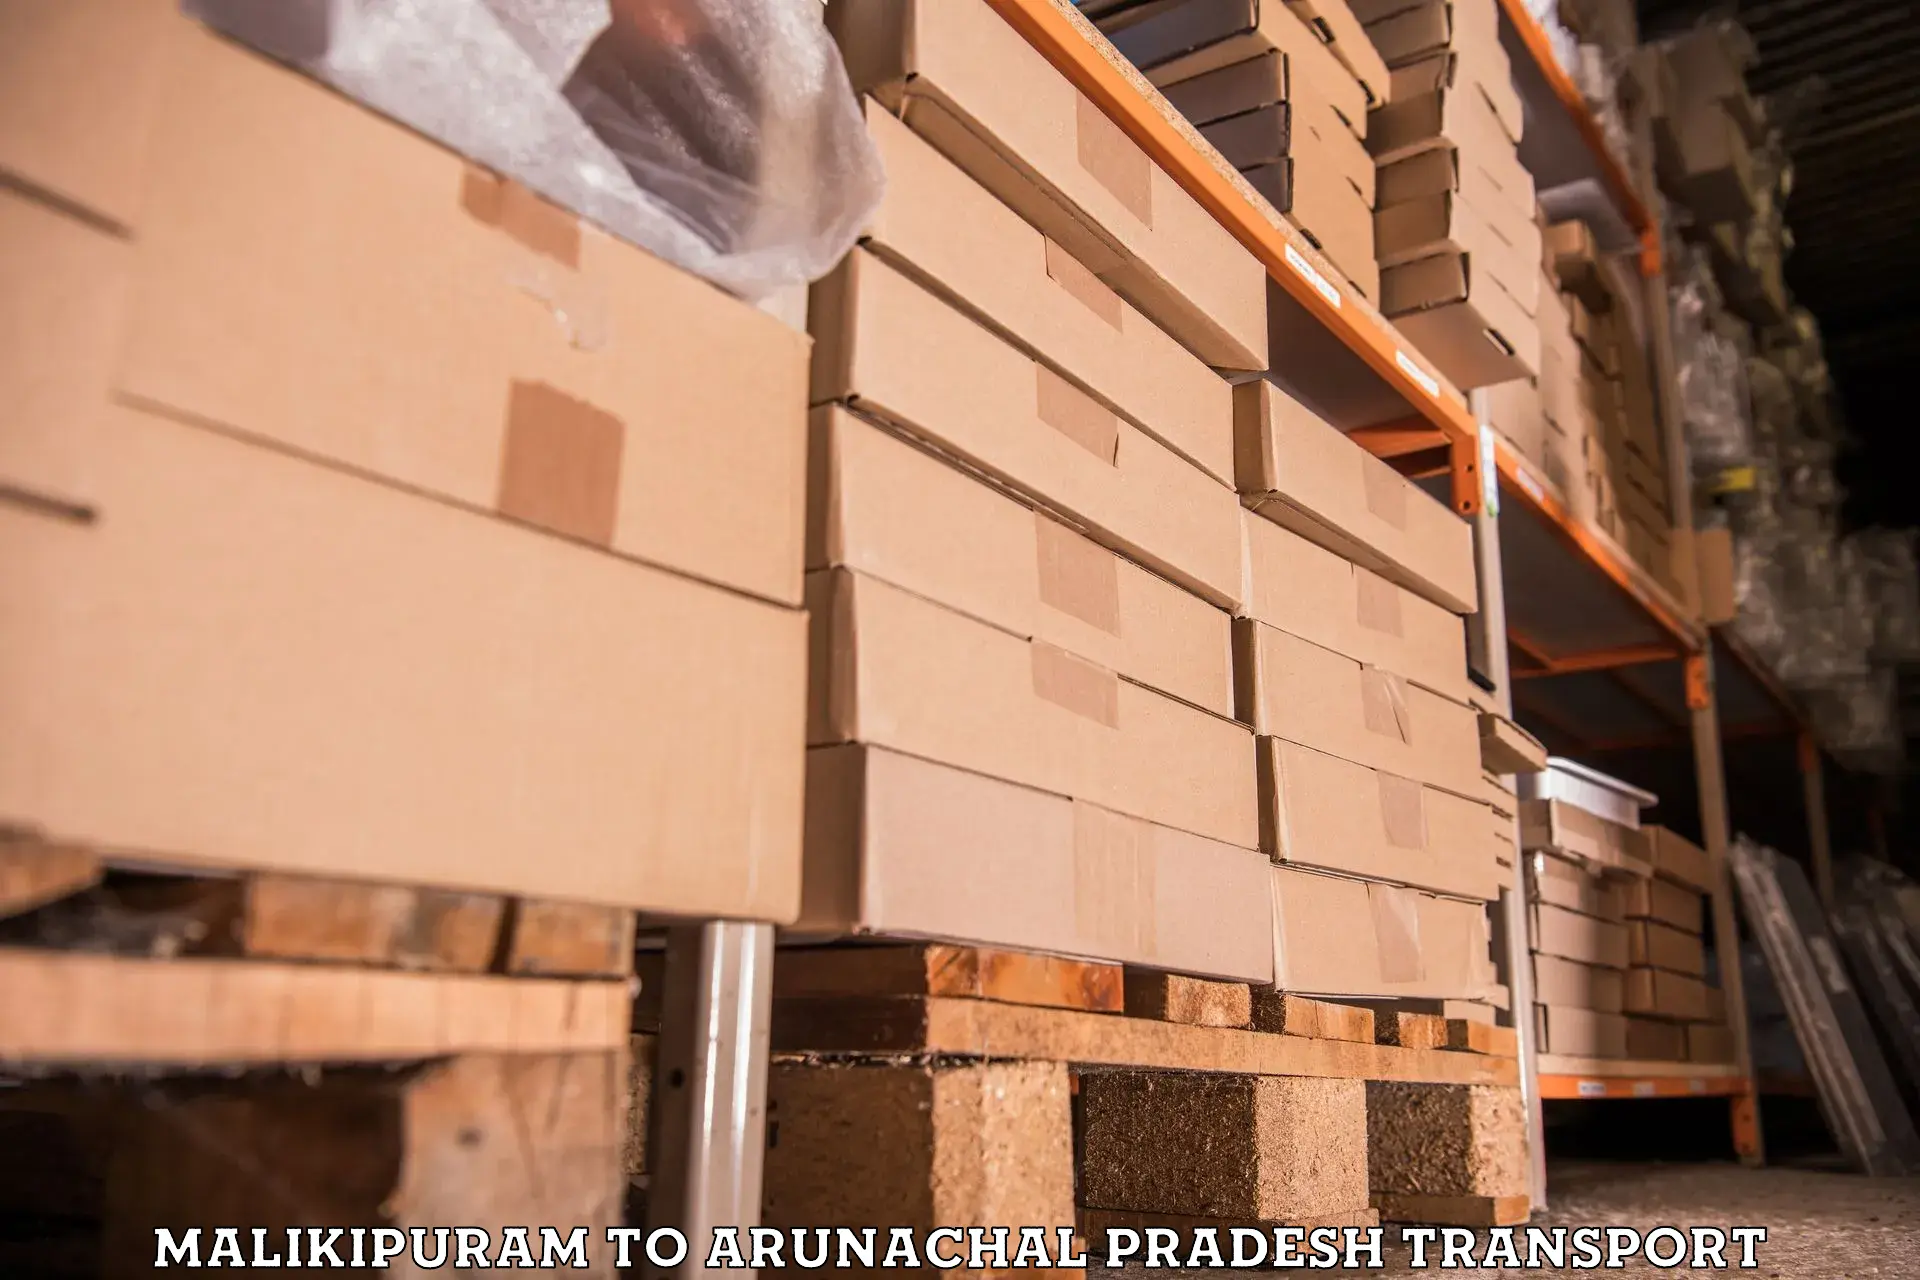 Furniture transport service in Malikipuram to Namsai